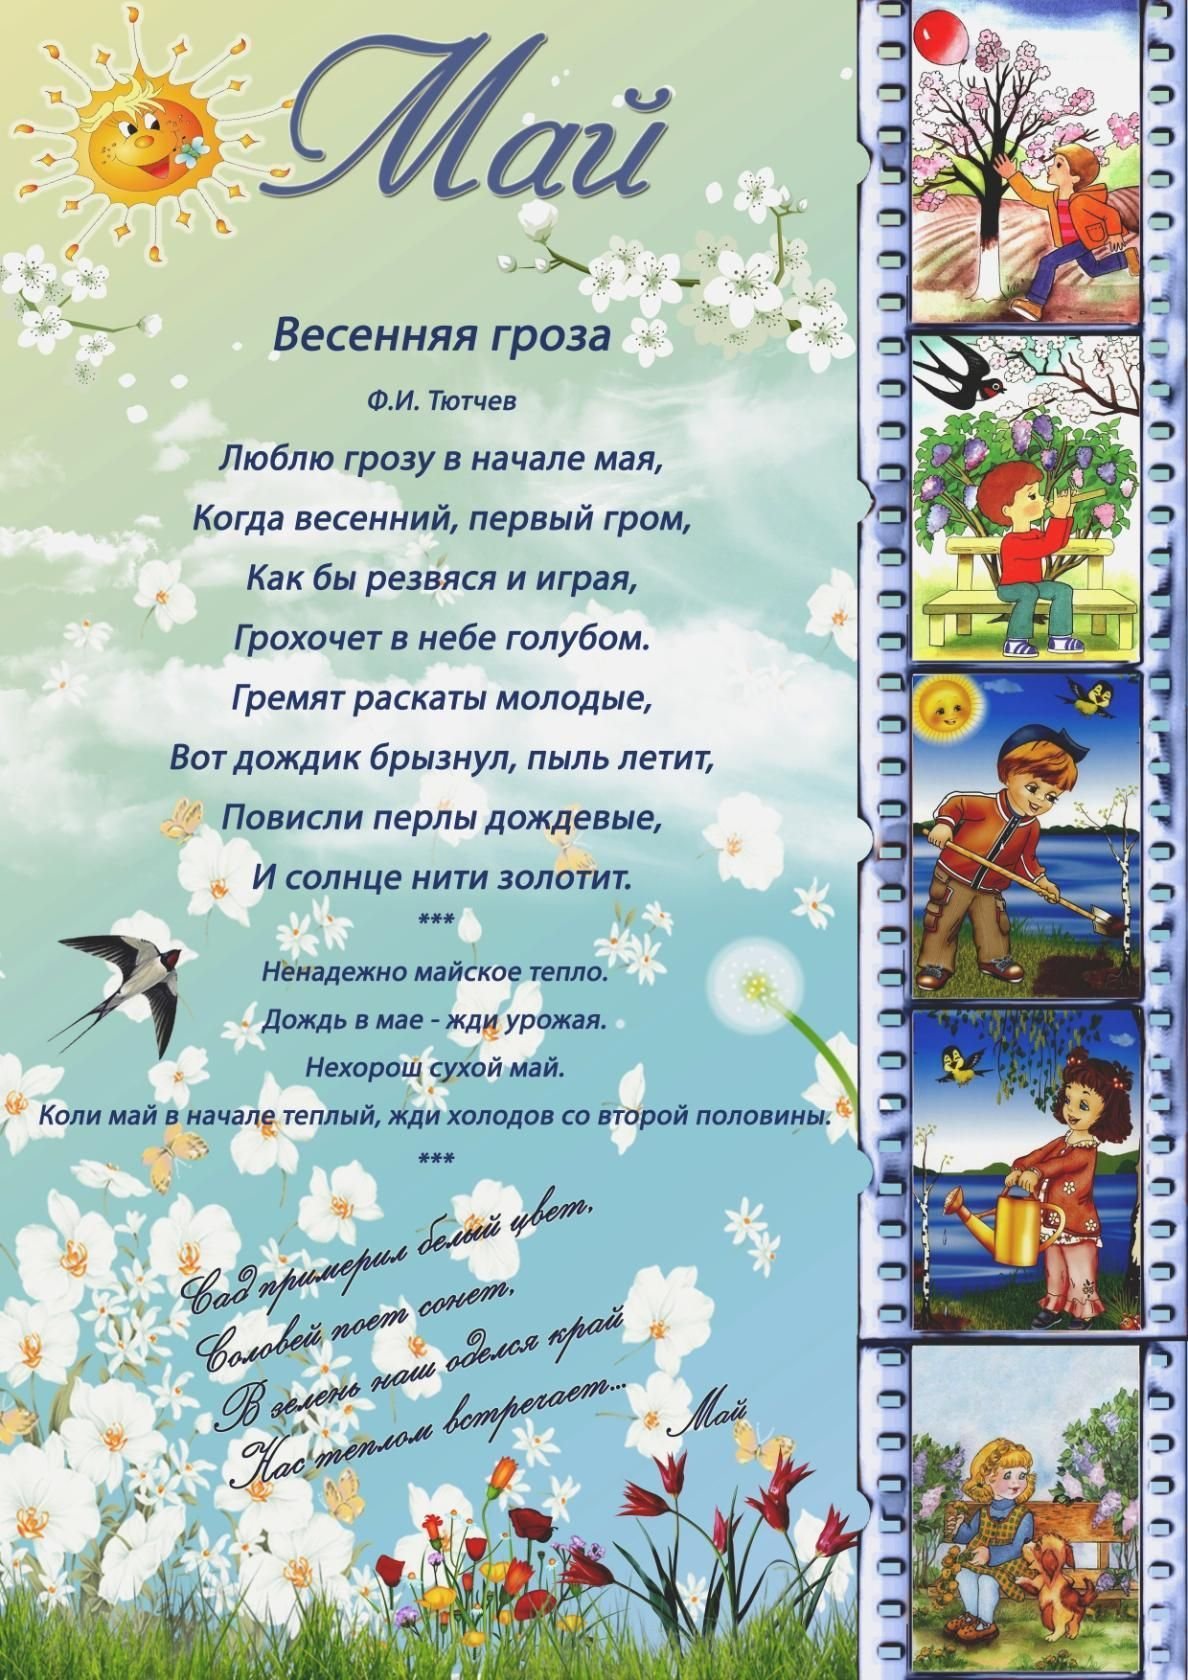 Стихотворение про весну для детей 5 лет. Март апрель май для детского сада.